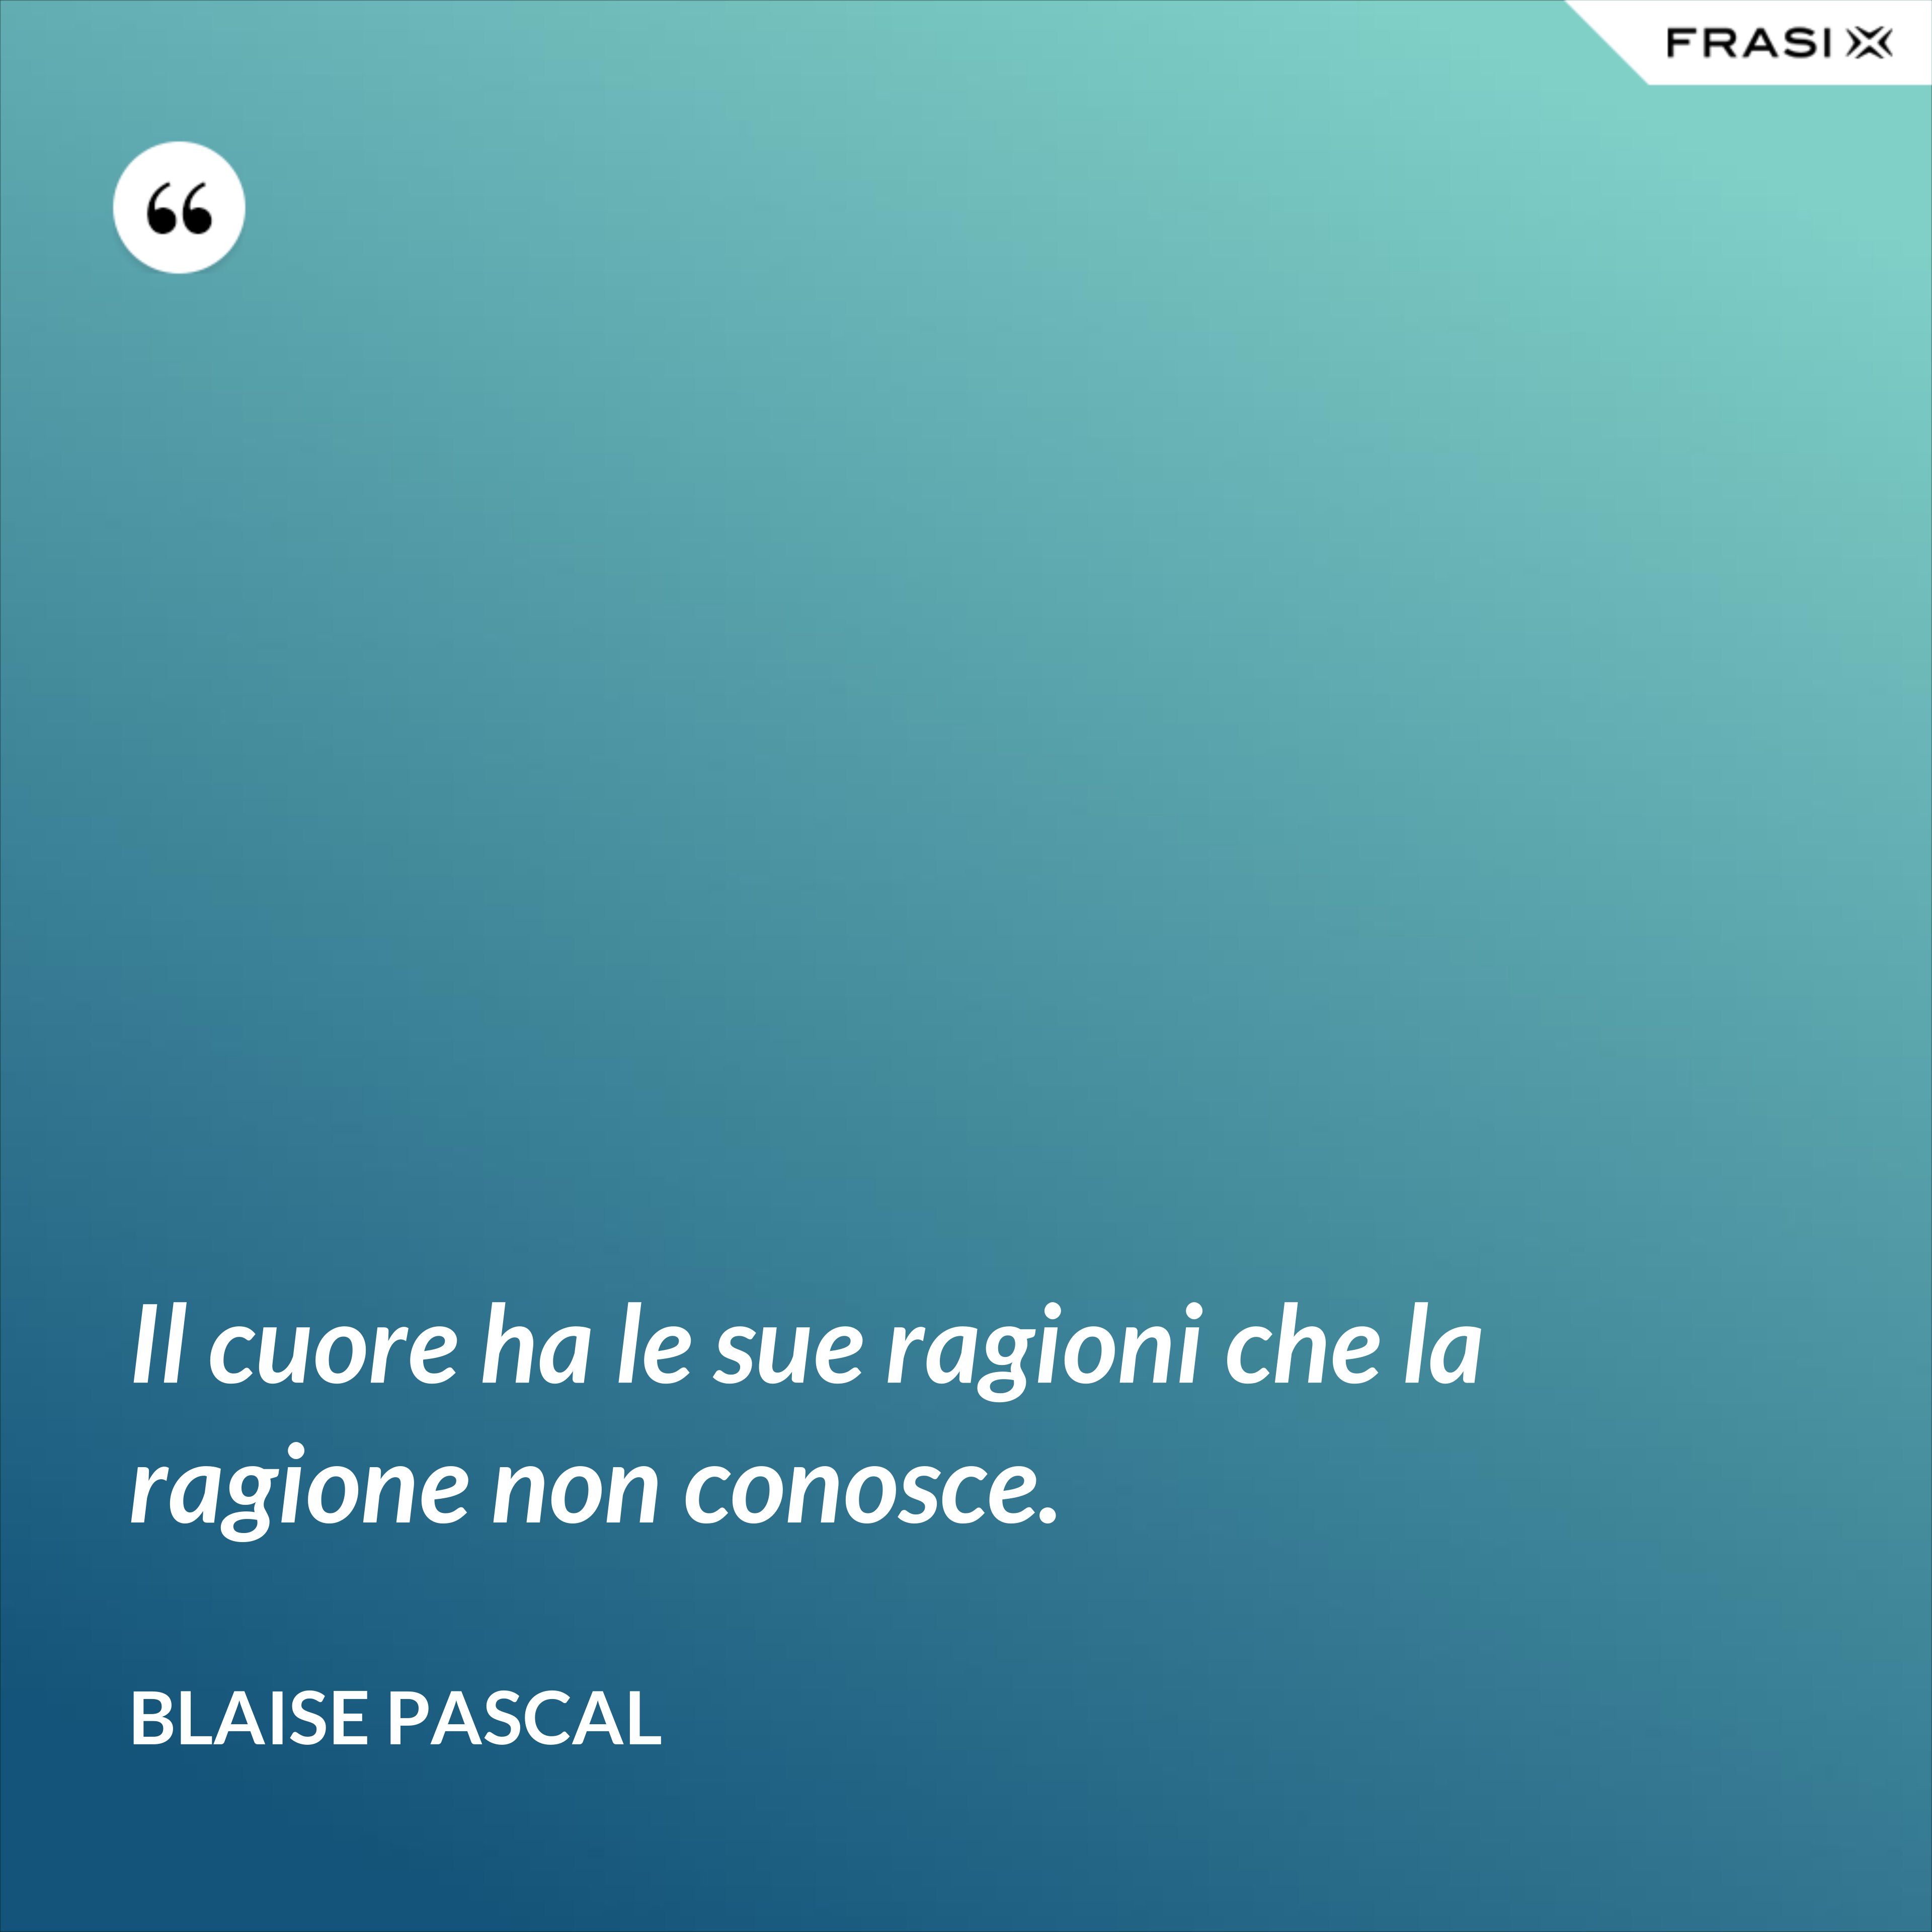 Il cuore ha le sue ragioni che la ragione non conosce. - Blaise Pascal